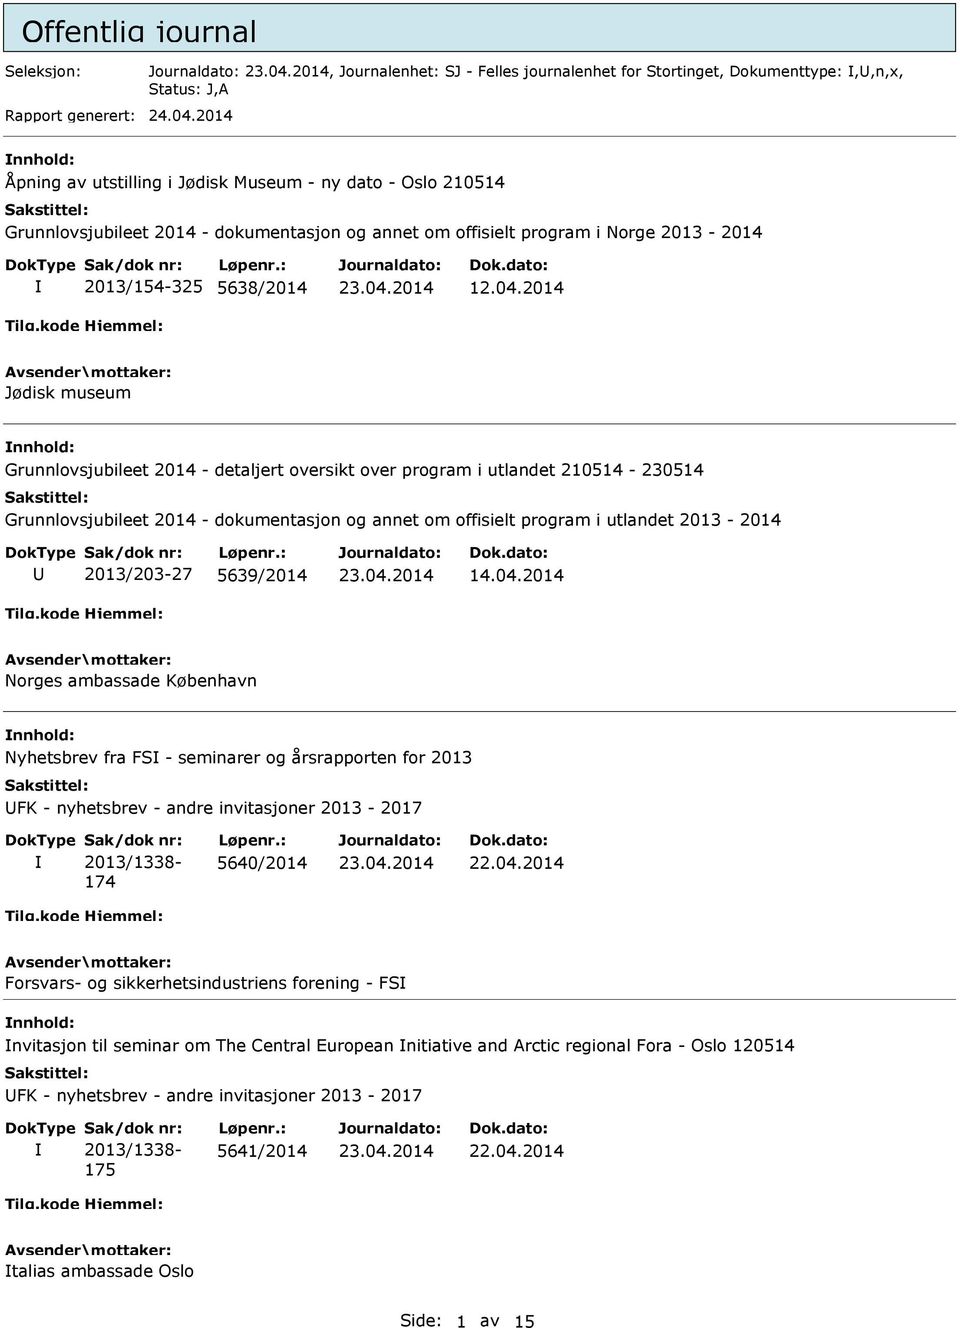 2014 Jødisk museum Grunnlovsjubileet 2014 - detaljert oversikt over program i utlandet 210514-230514 Grunnlovsjubileet 2014 - dokumentasjon og annet om offisielt program i utlandet 2013-2014 U